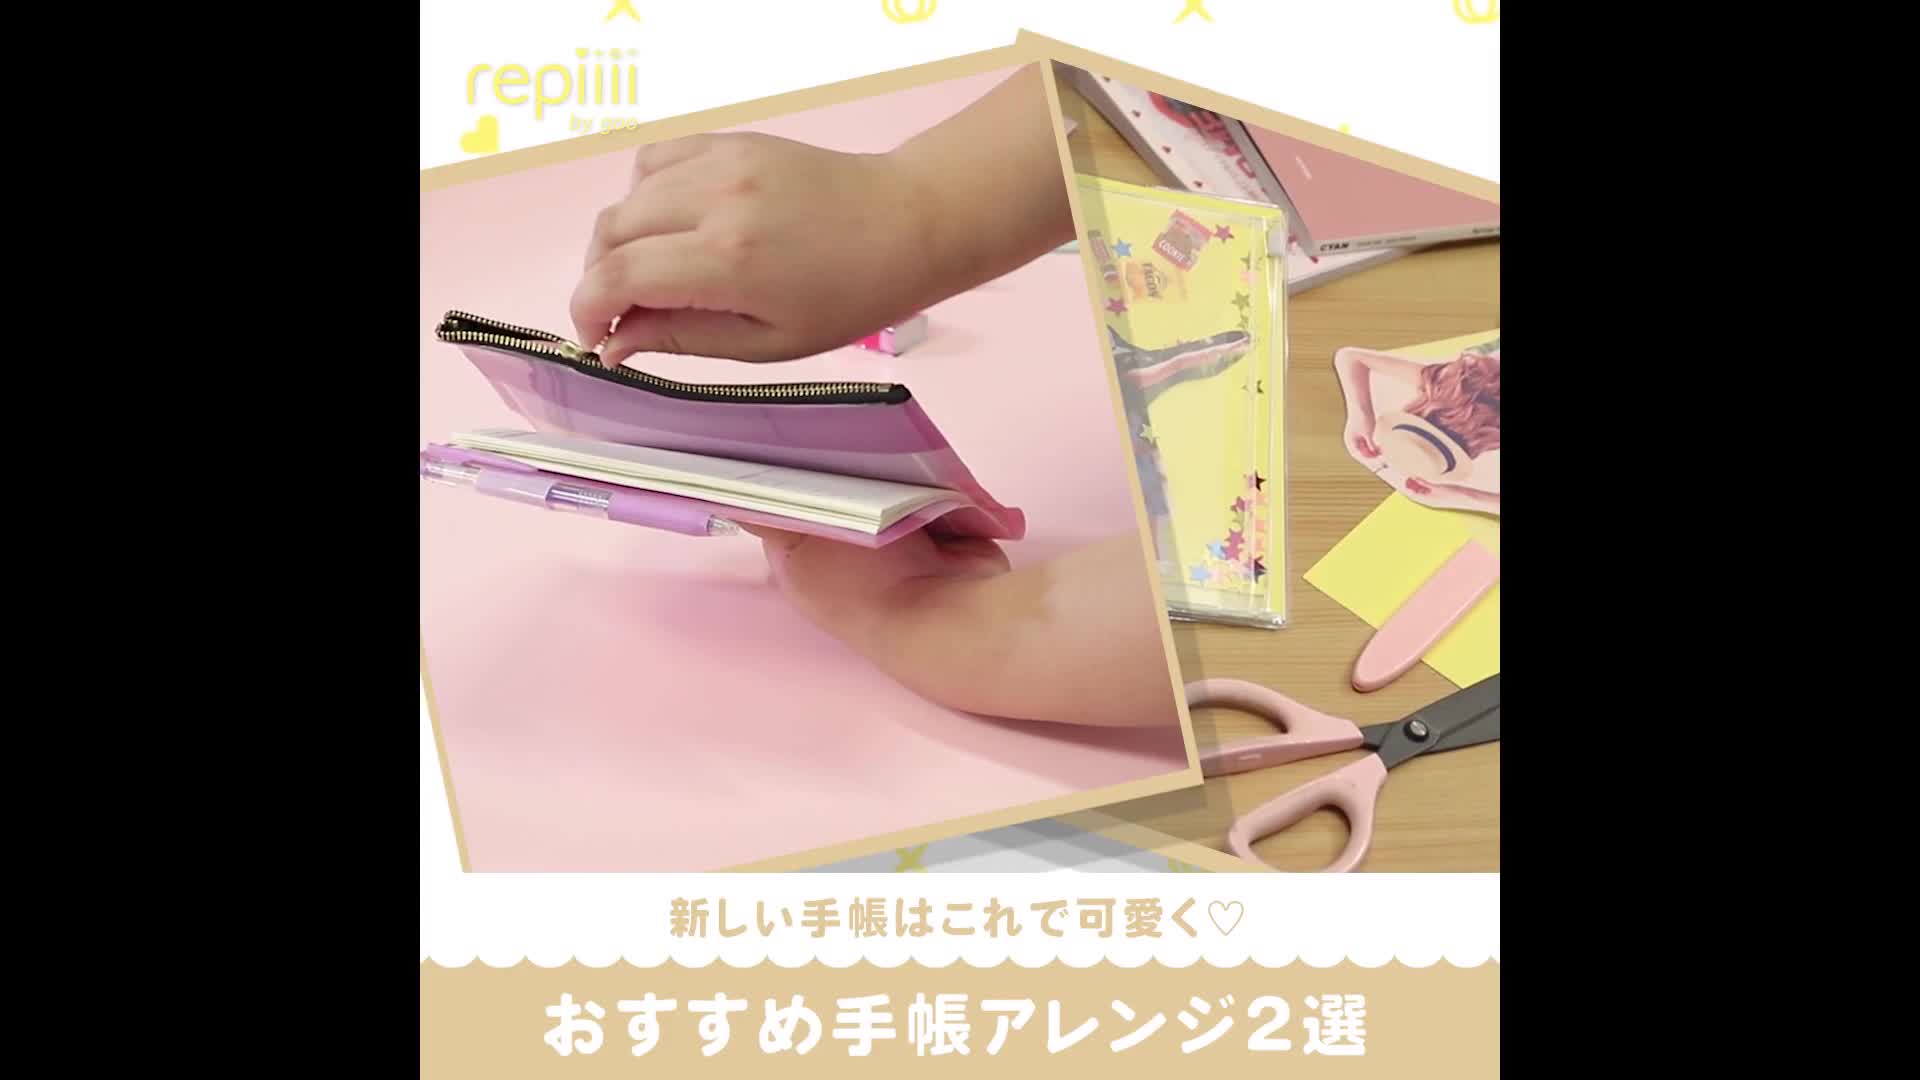 新しい手帳はこれで可愛く おすすめ手帳アレンジ2選 Repiiii By Goo レピー Yahoo Japan